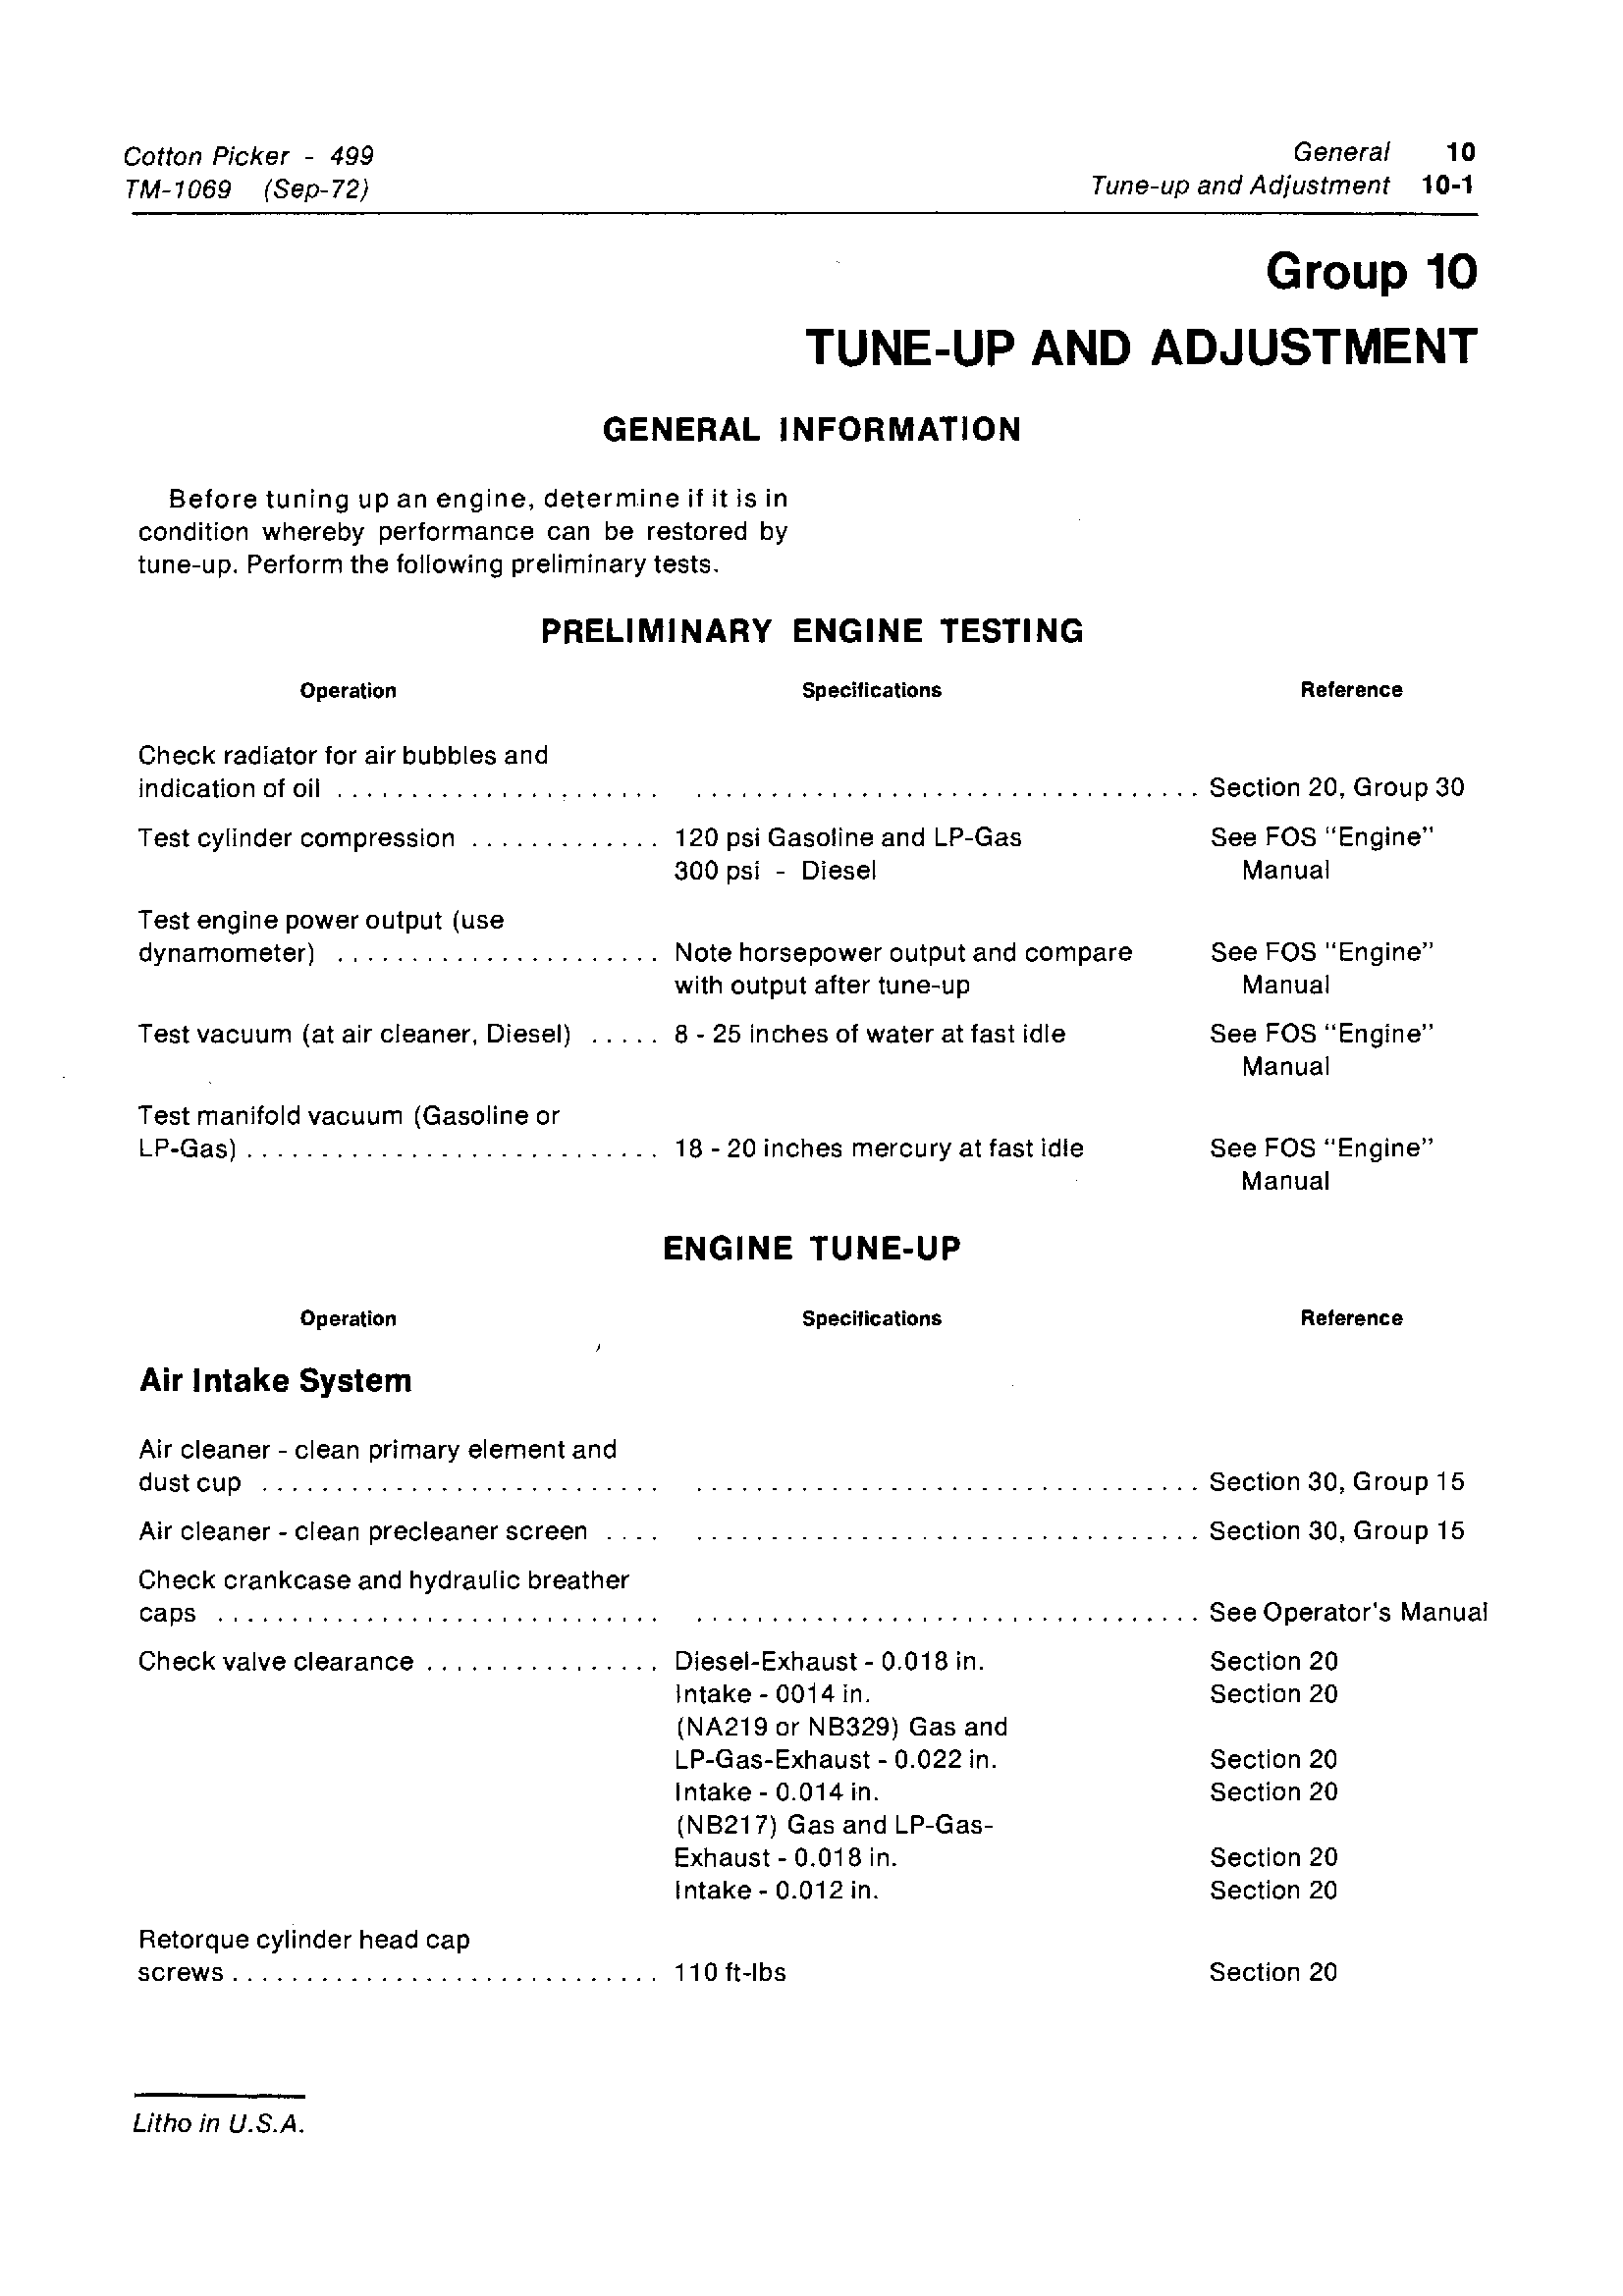 John Deere 499 manual pdf